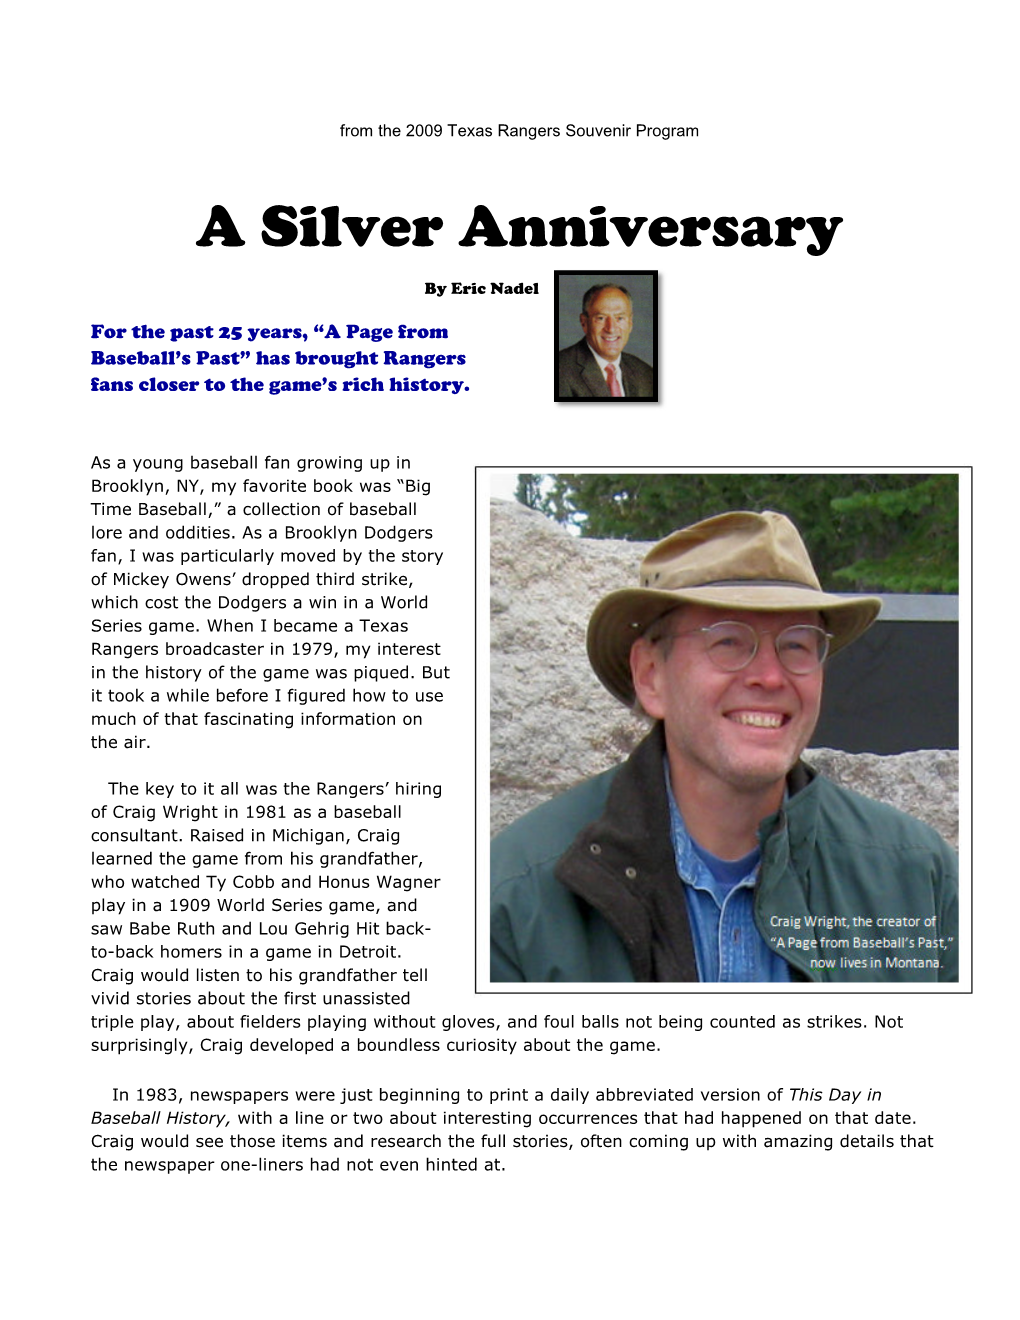 A Silver Anniversary